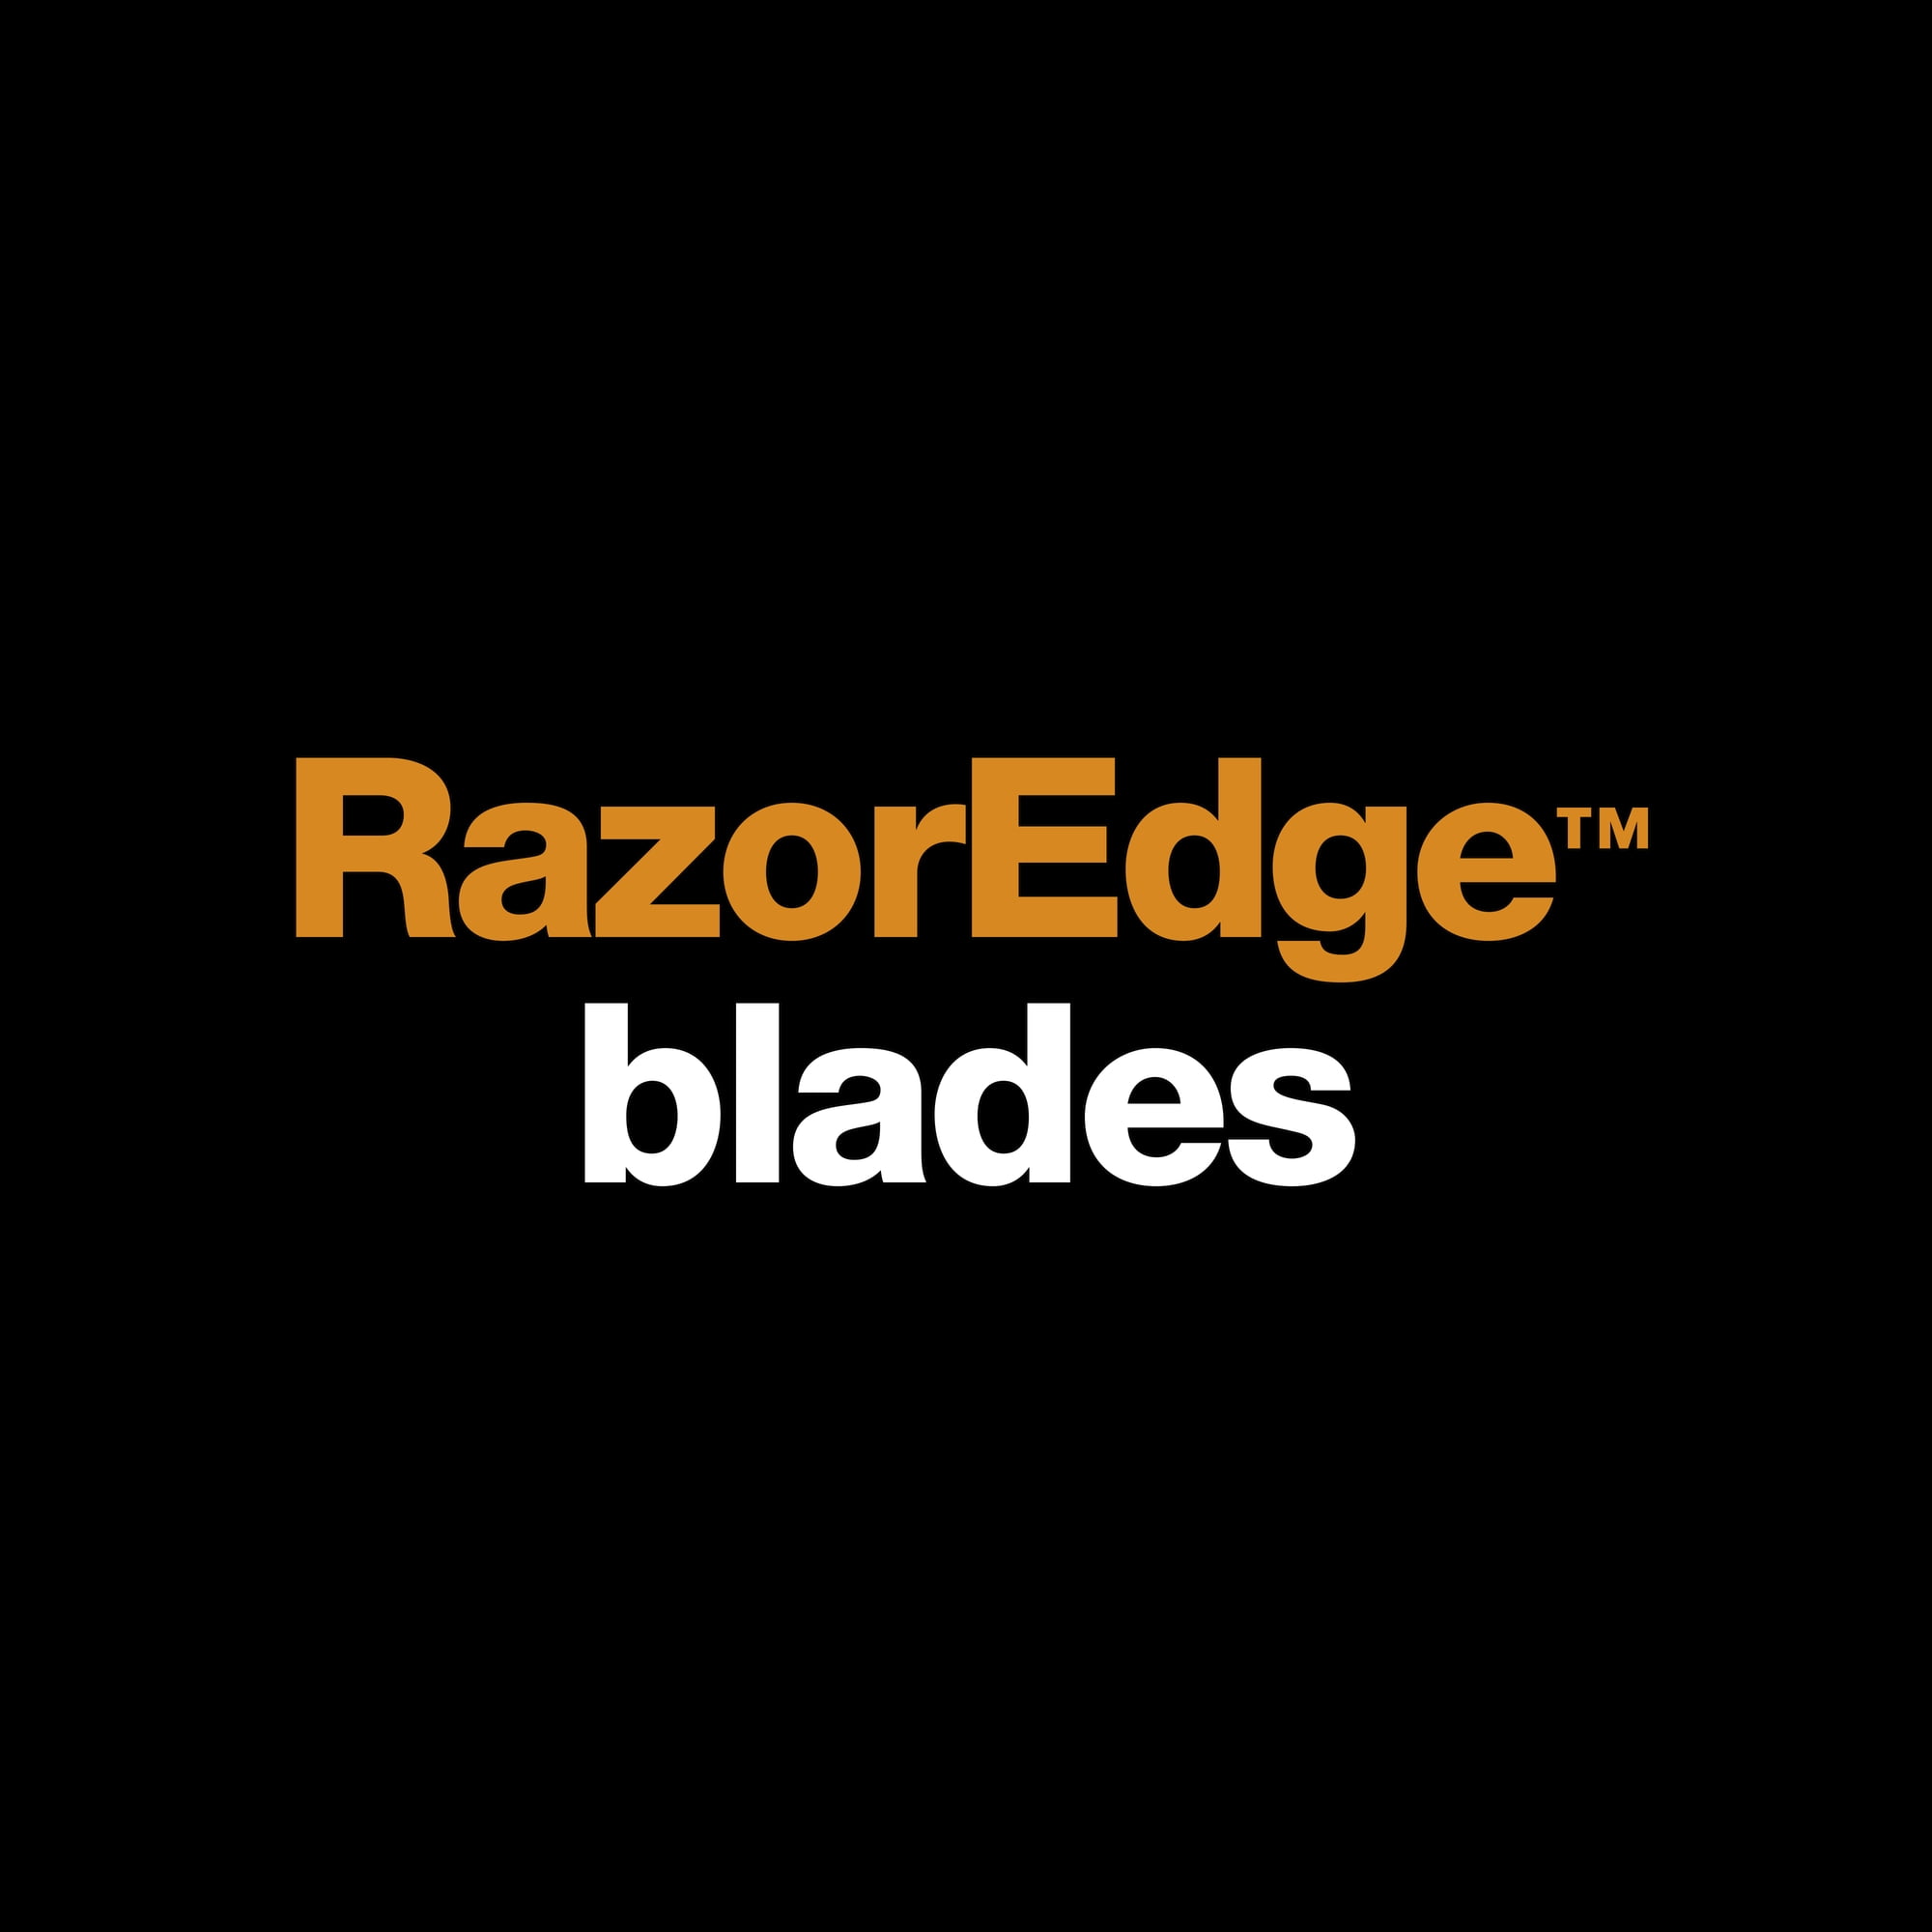 Fiskars Amplify 10 RazorEdge Fabic Scissors at